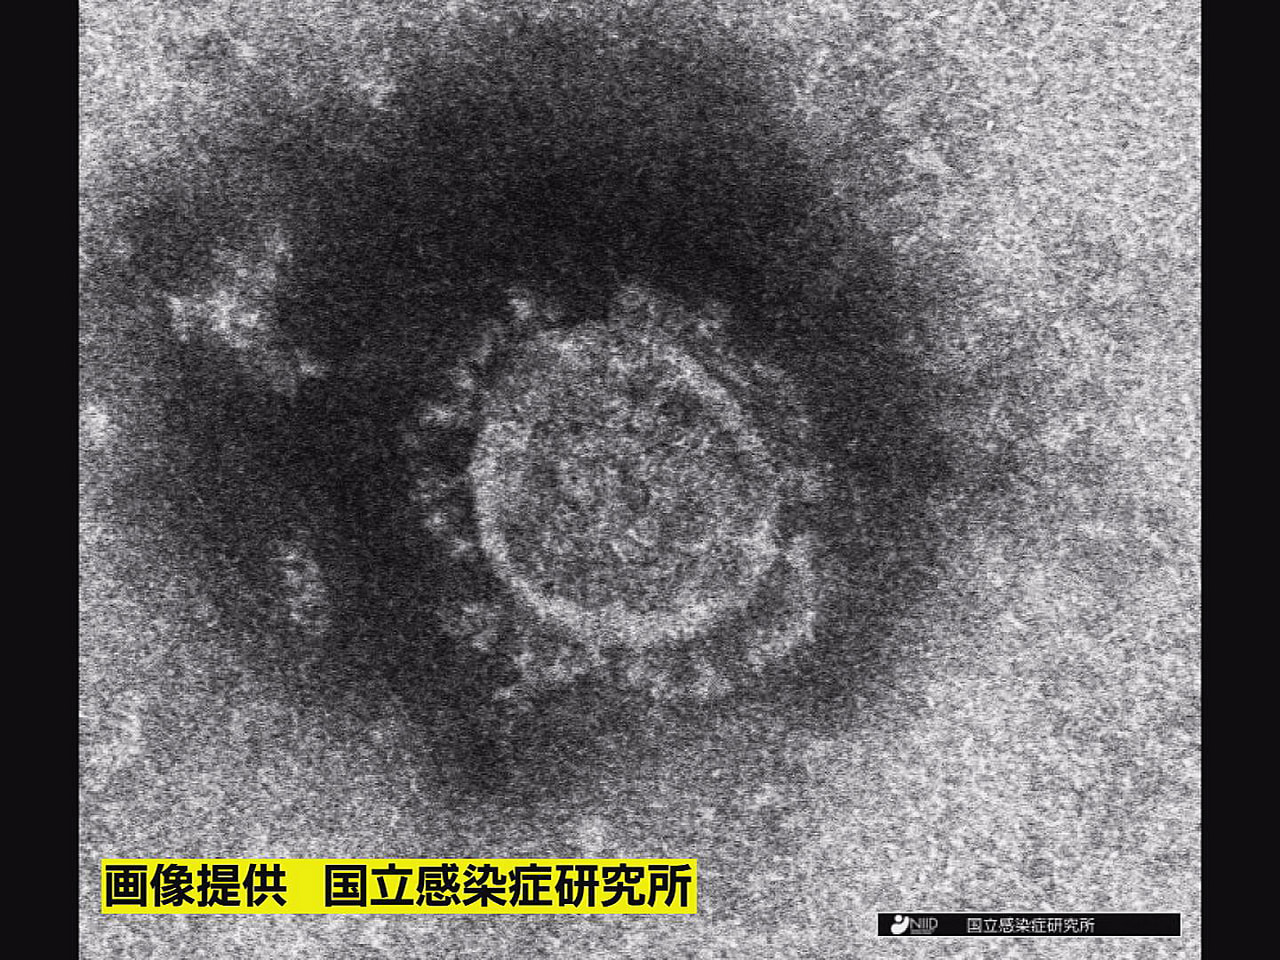 岐阜県は２９日、新型コロナウイルスの新規感染者が４２３人確認されたと発表しました...